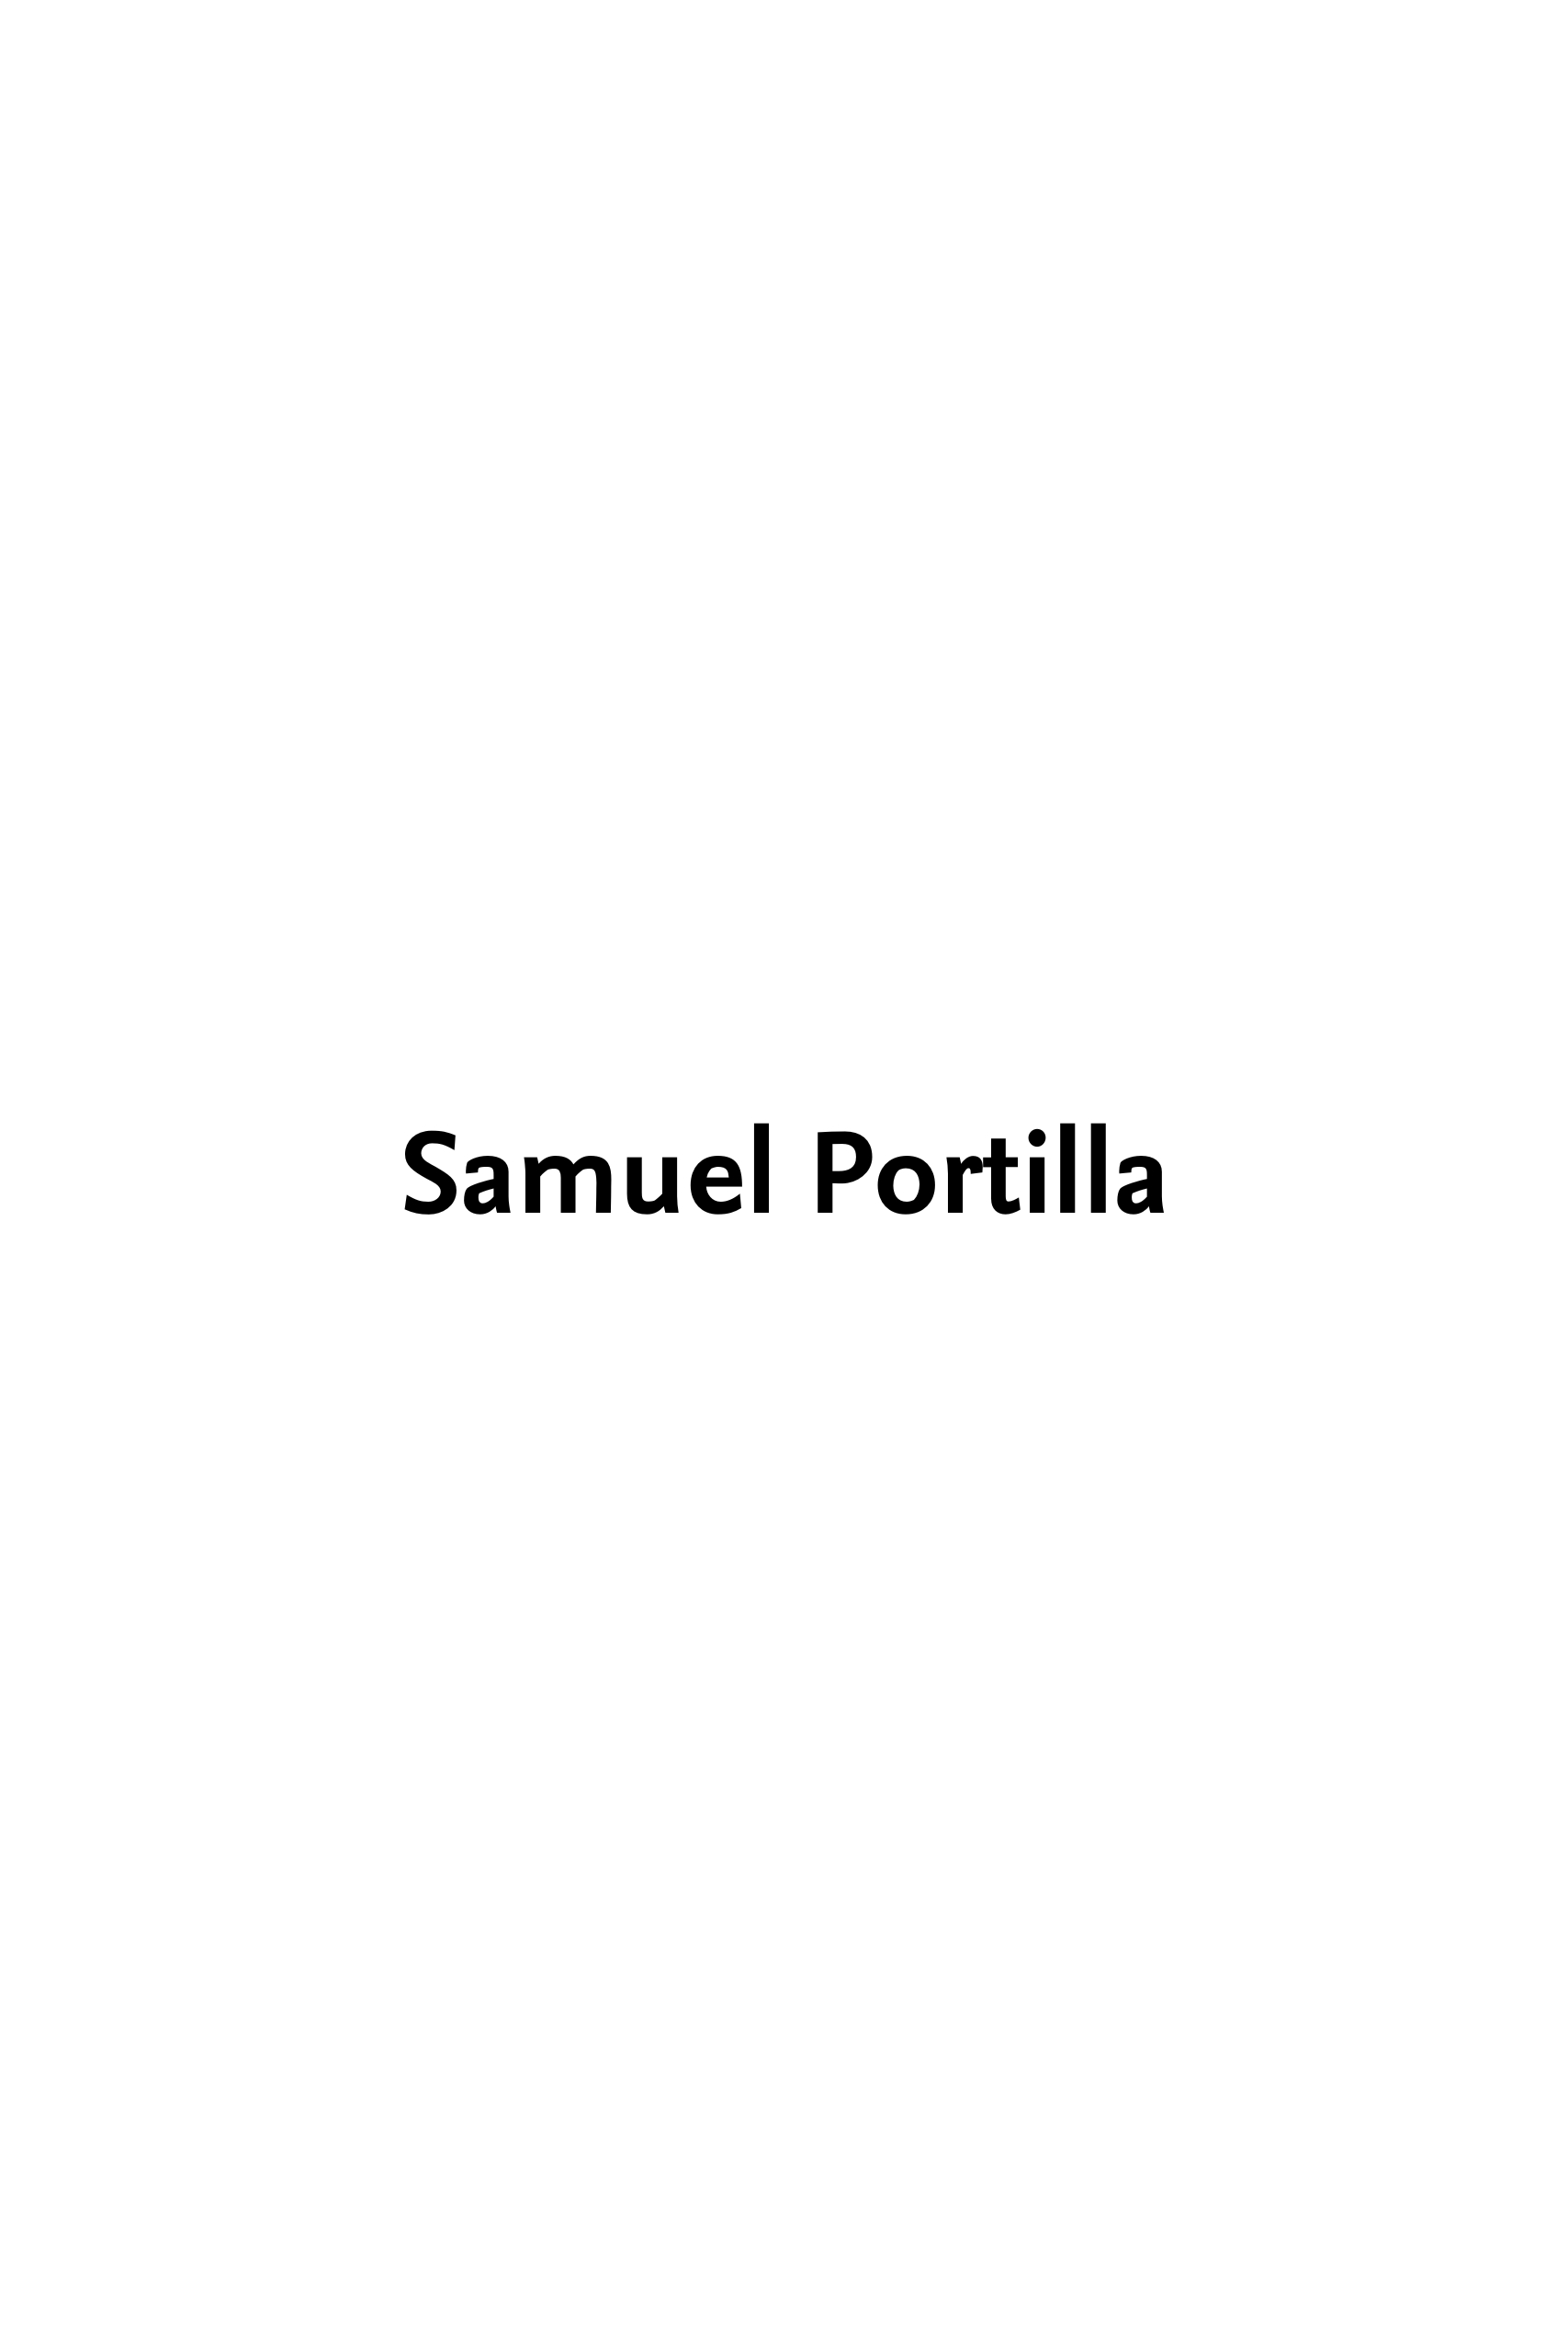 SAMUEL PORTILLA